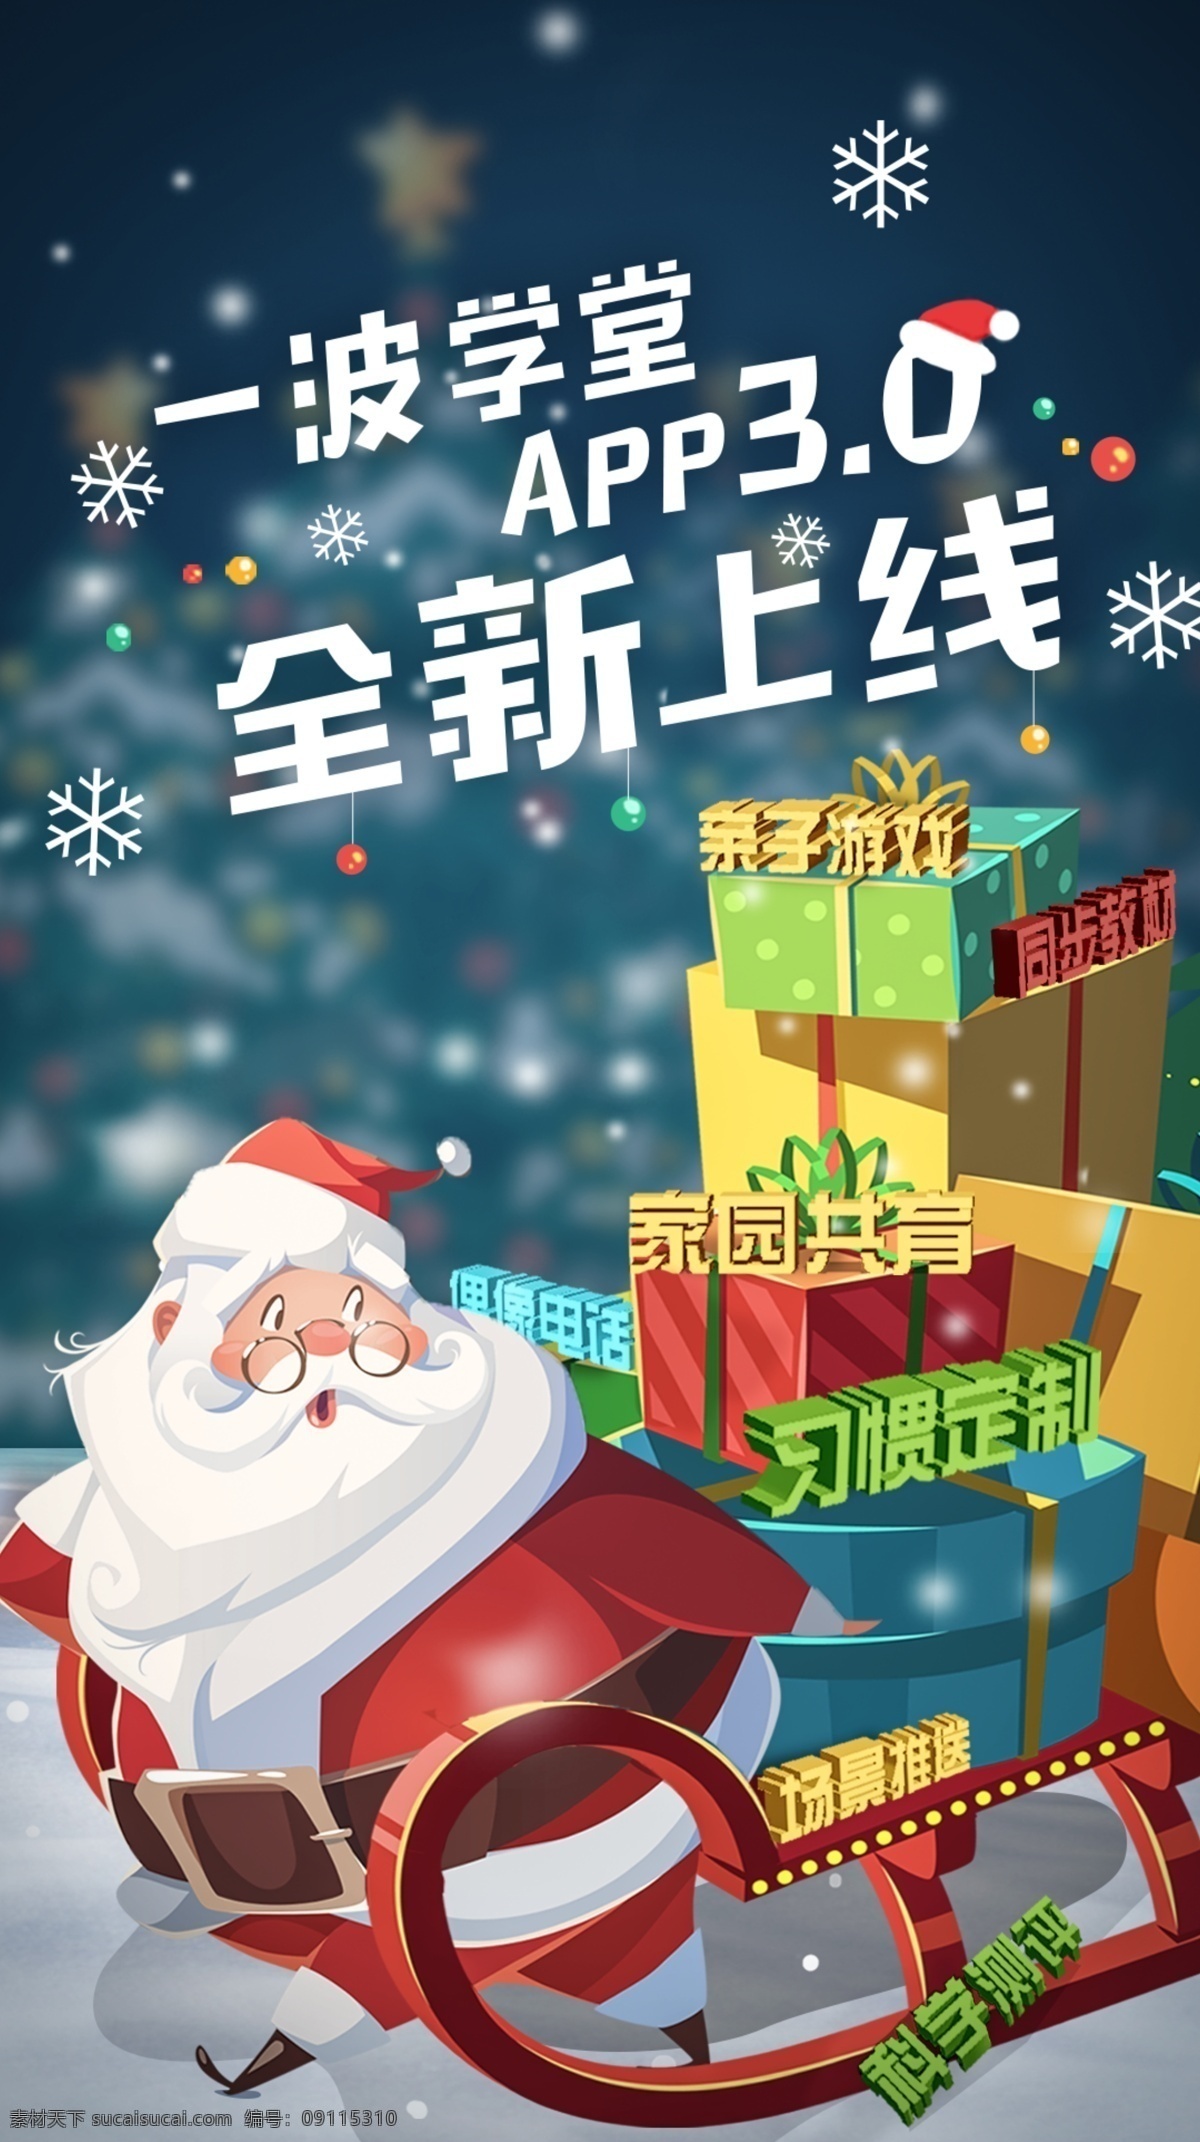 圣诞 app 更新 朋友 圈 海报 礼物 朋友圈海报 圣诞老人 圣诞海报 app更新